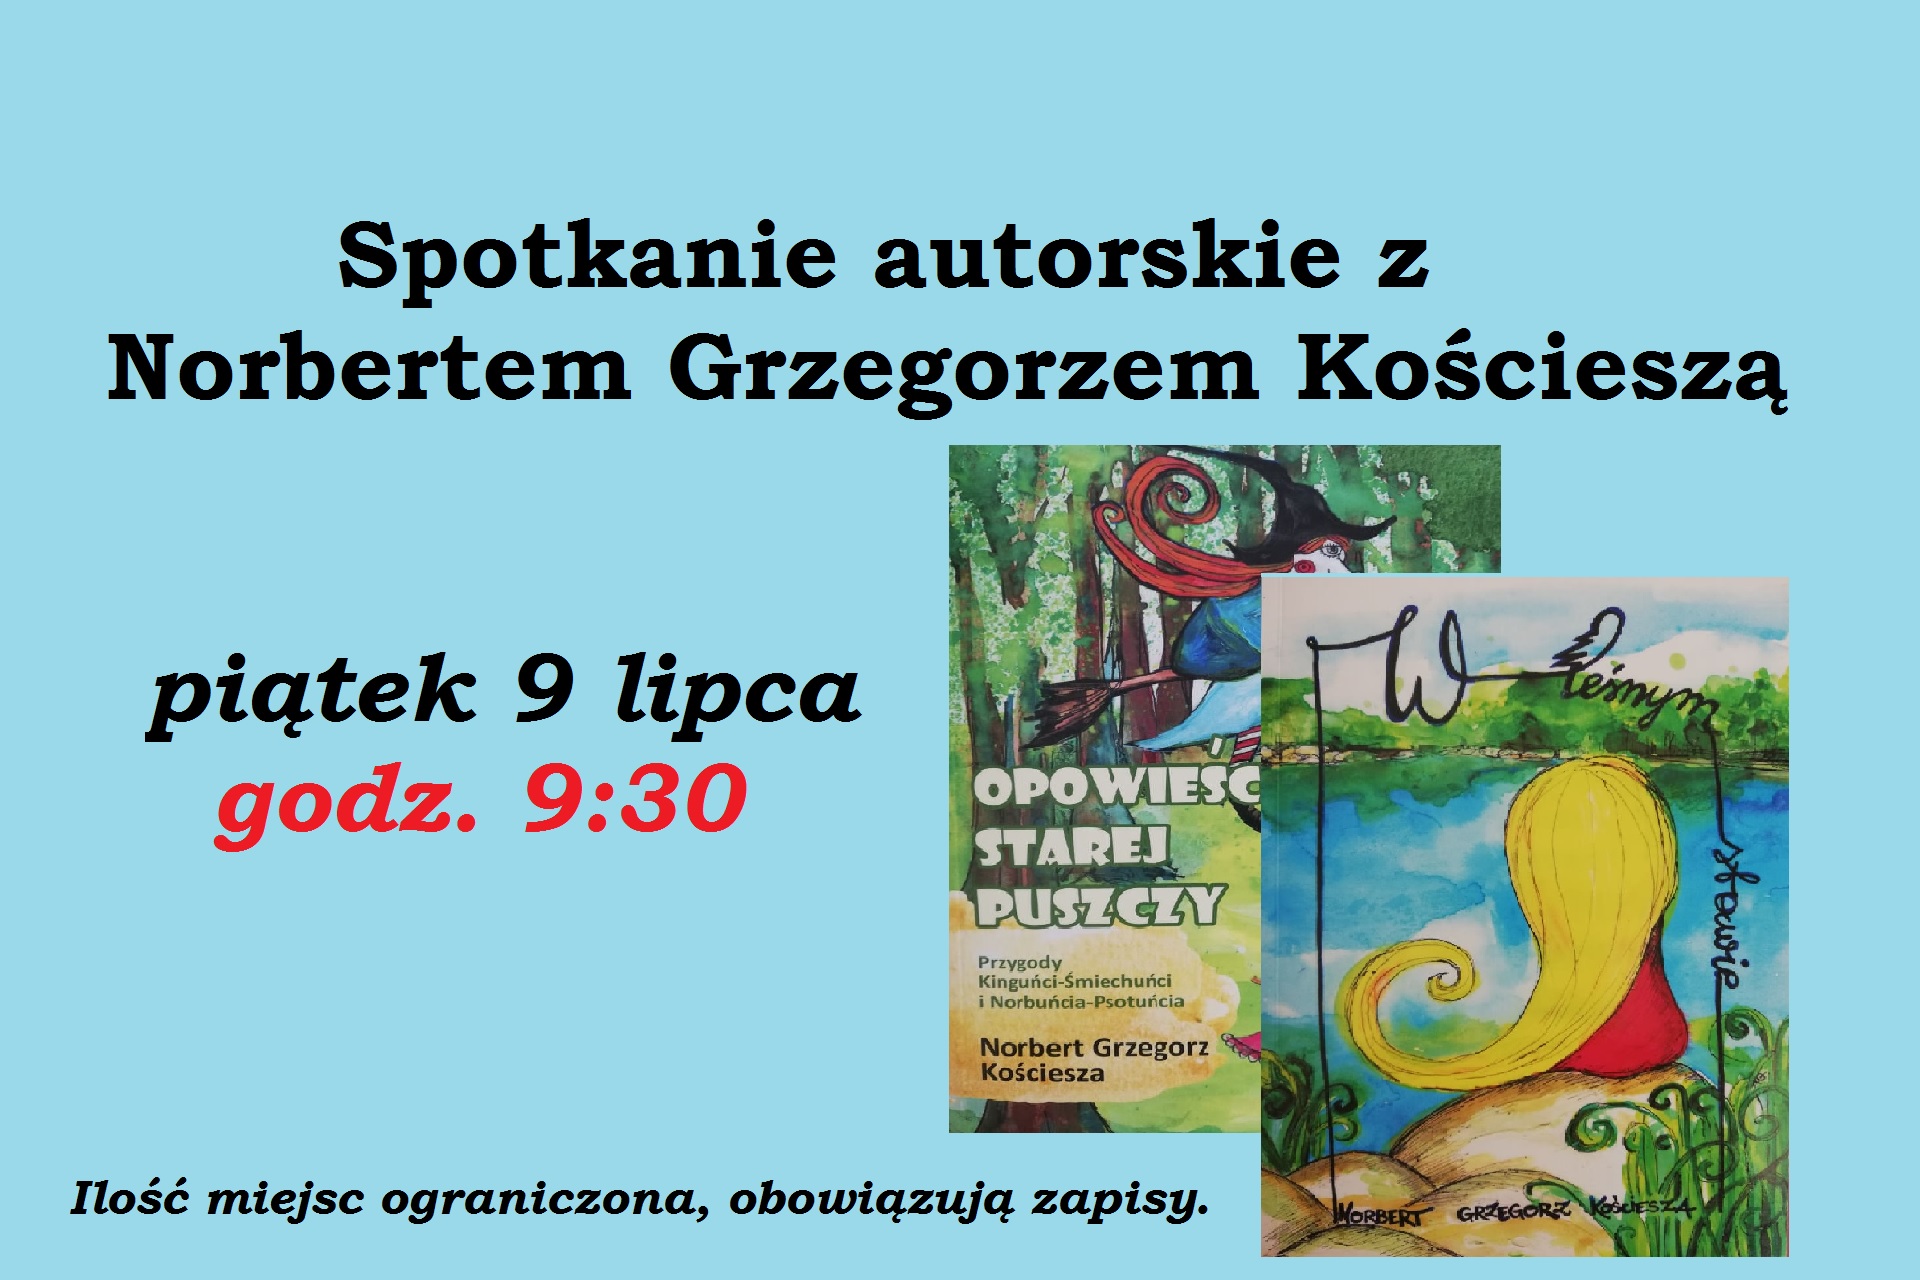 Spotkanie autorskie z Norbertem Grzegorzem Kościeszą, piątek 9 lipca godz. 9:30. Ilość miejsc ograniczona, obowiązują zapisy. Po prawej stronie zdjęcia okładek dwóch książek autora.